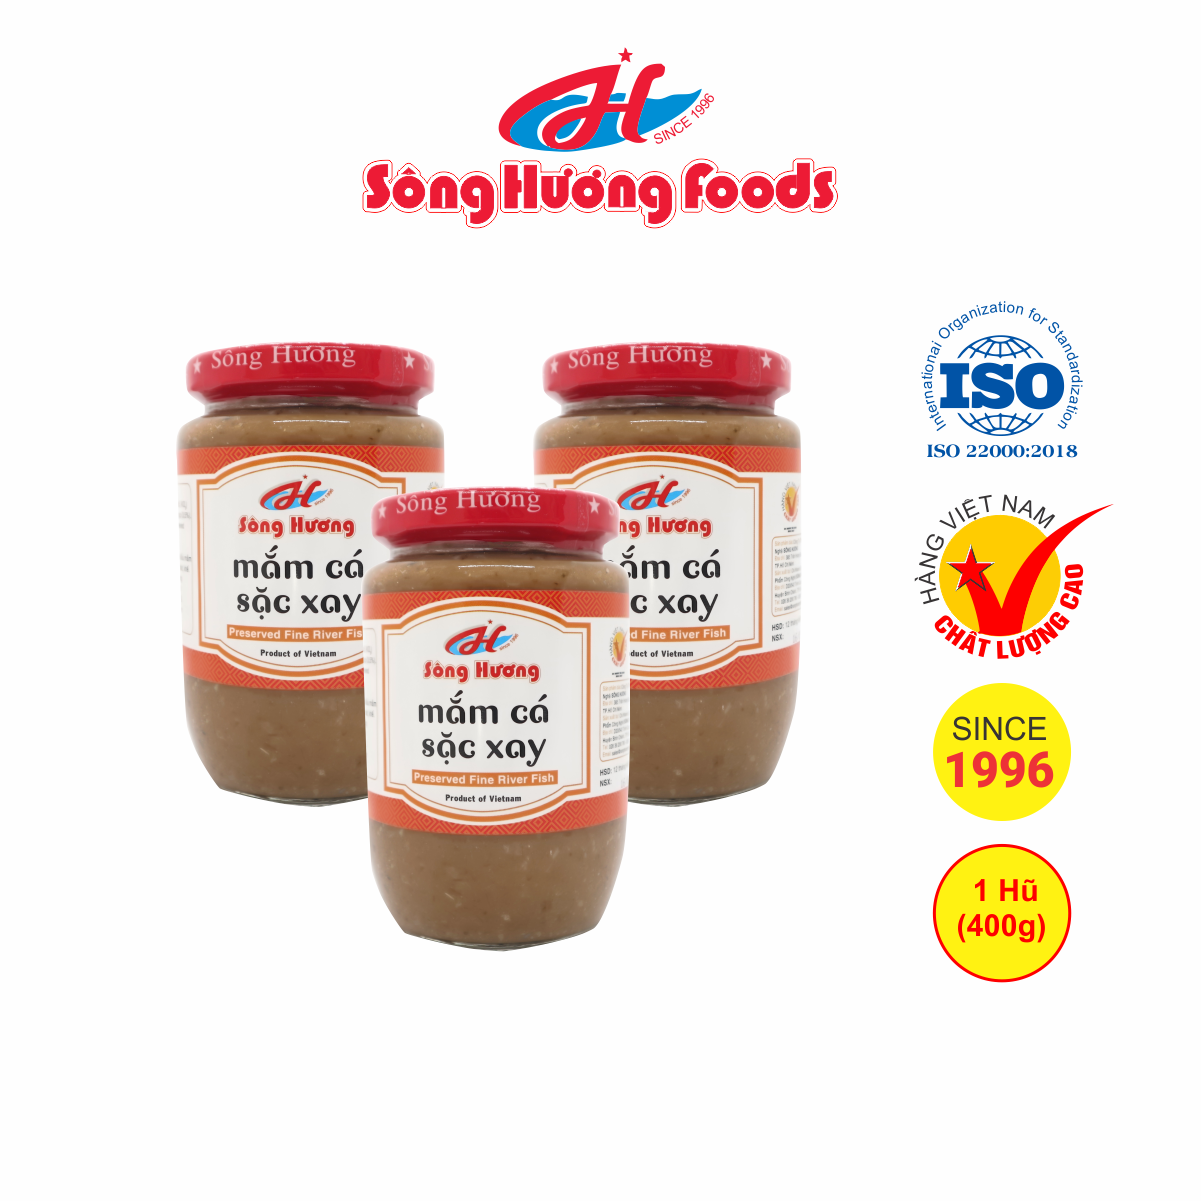 3 Hũ Mắm Cá Sặc Xay Sông Hương Foods Hũ 400g